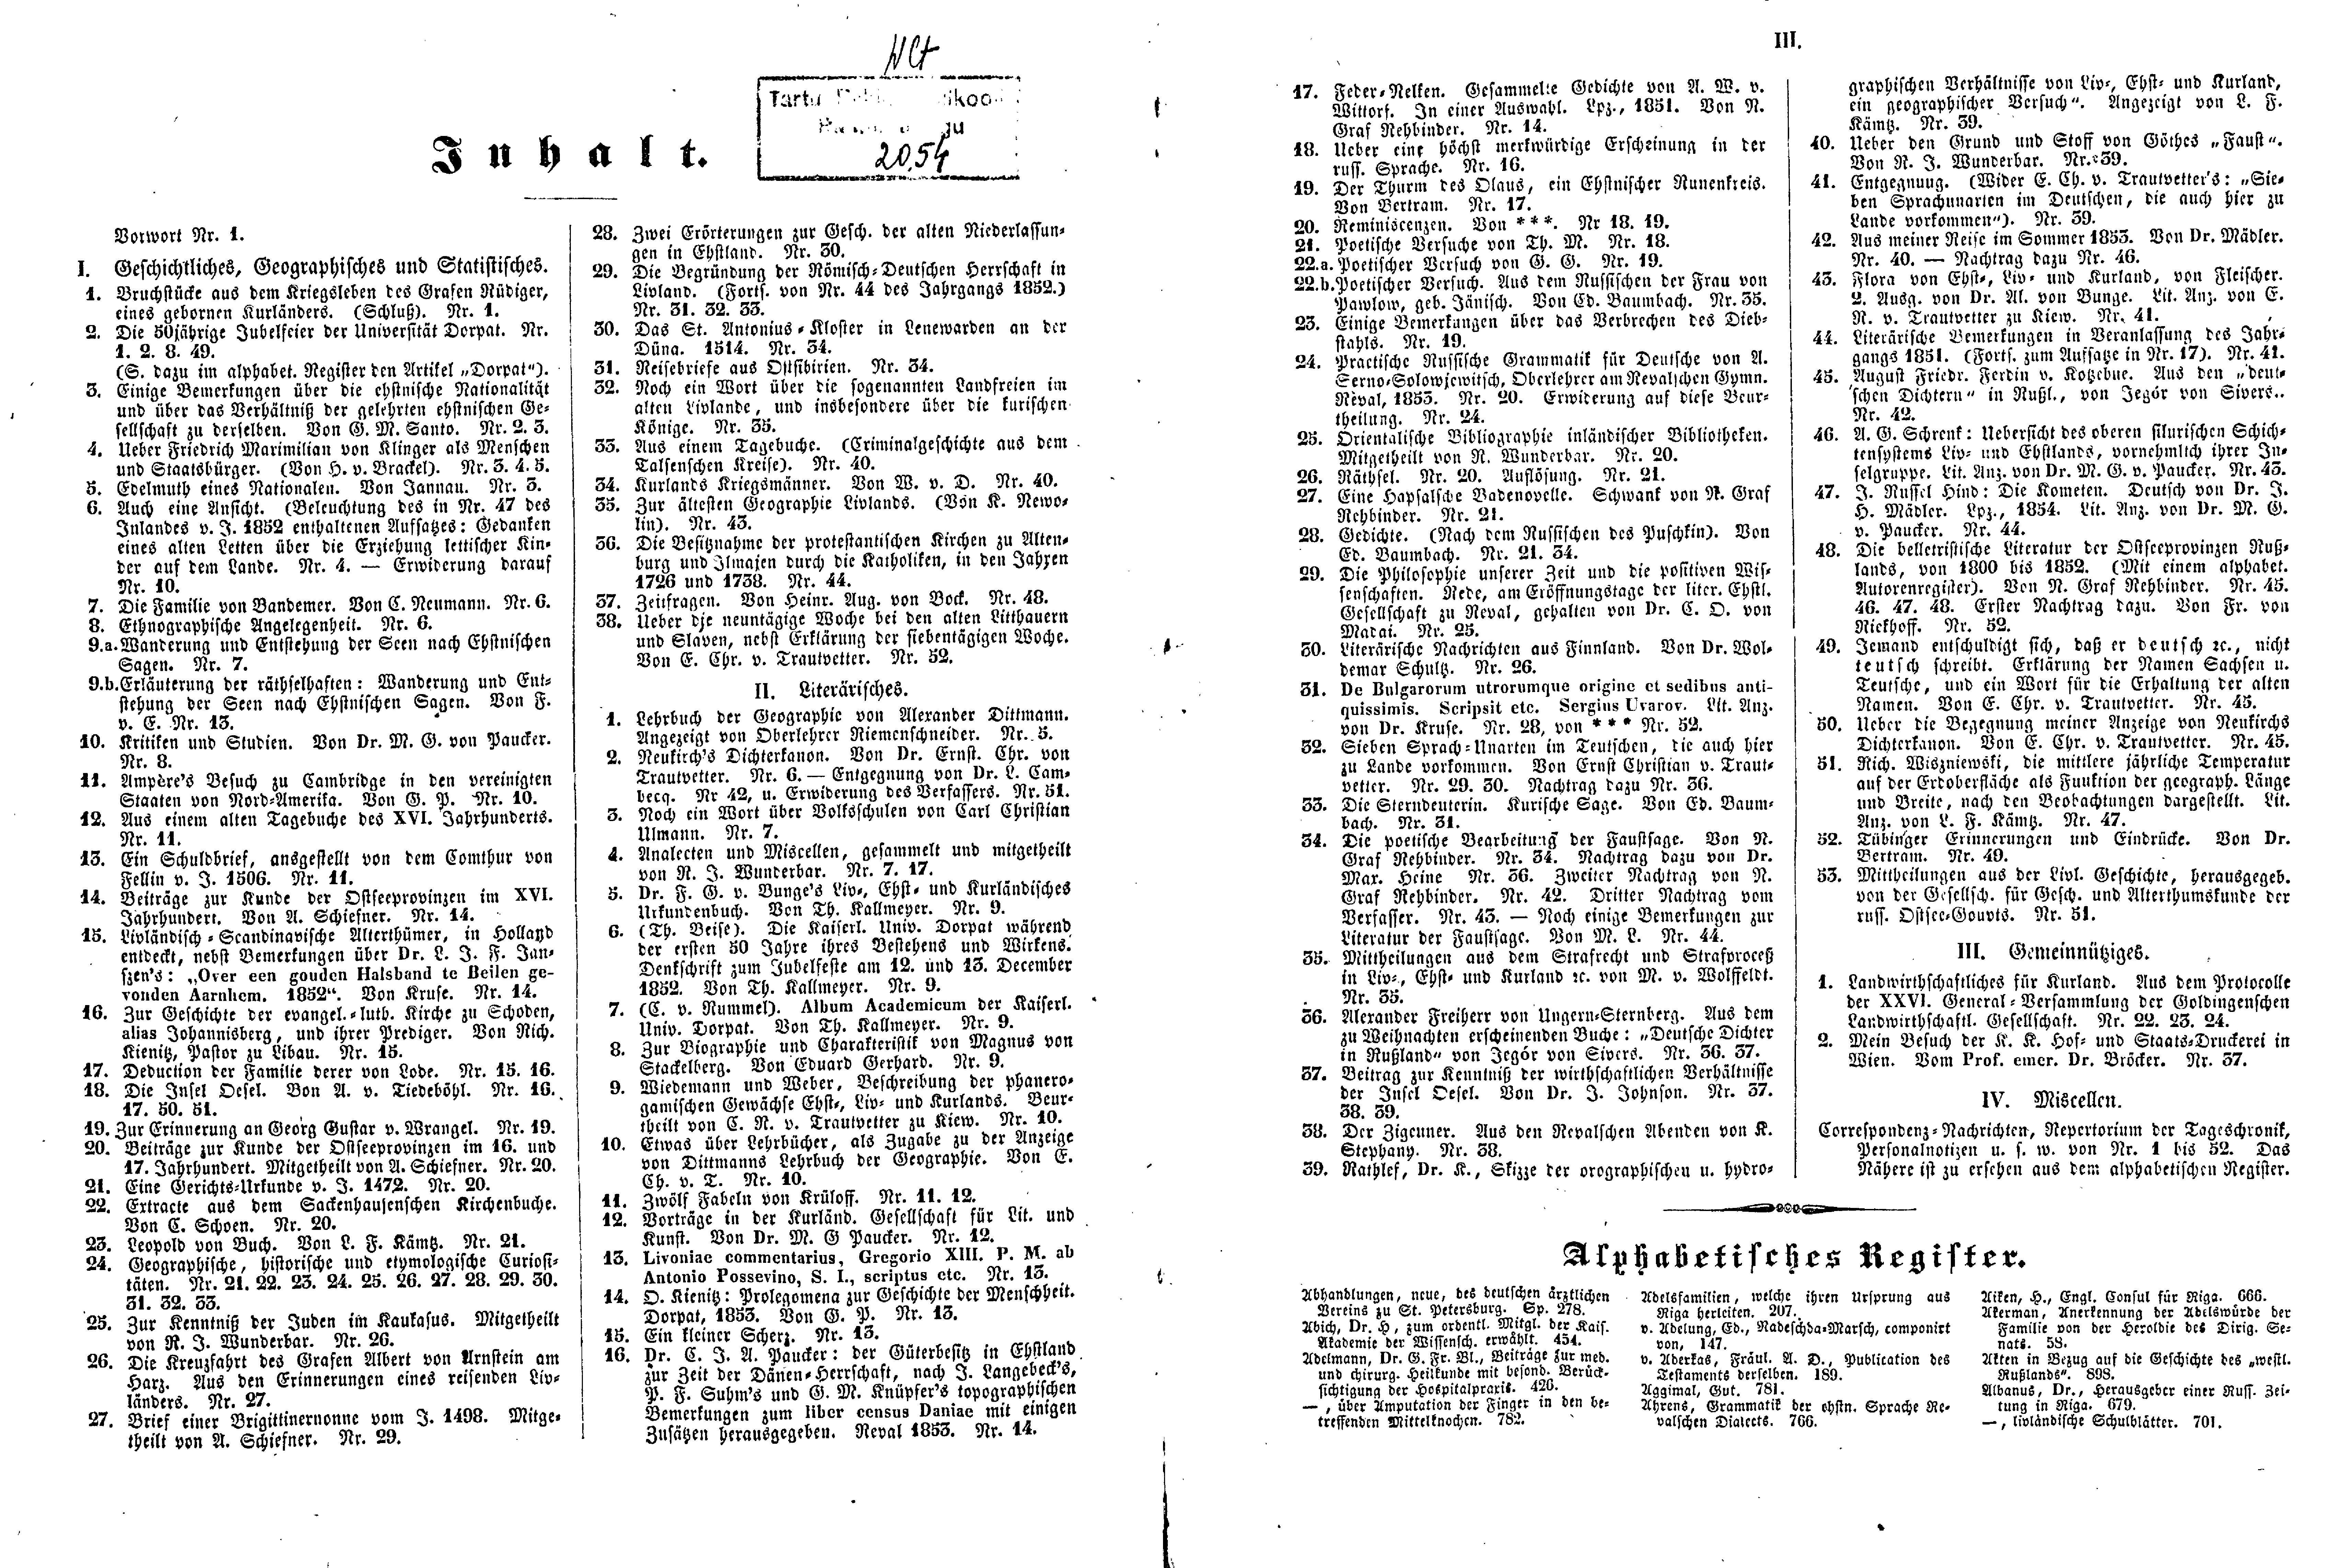 Das Inland [18] (1853) | 2. (II-III) Index